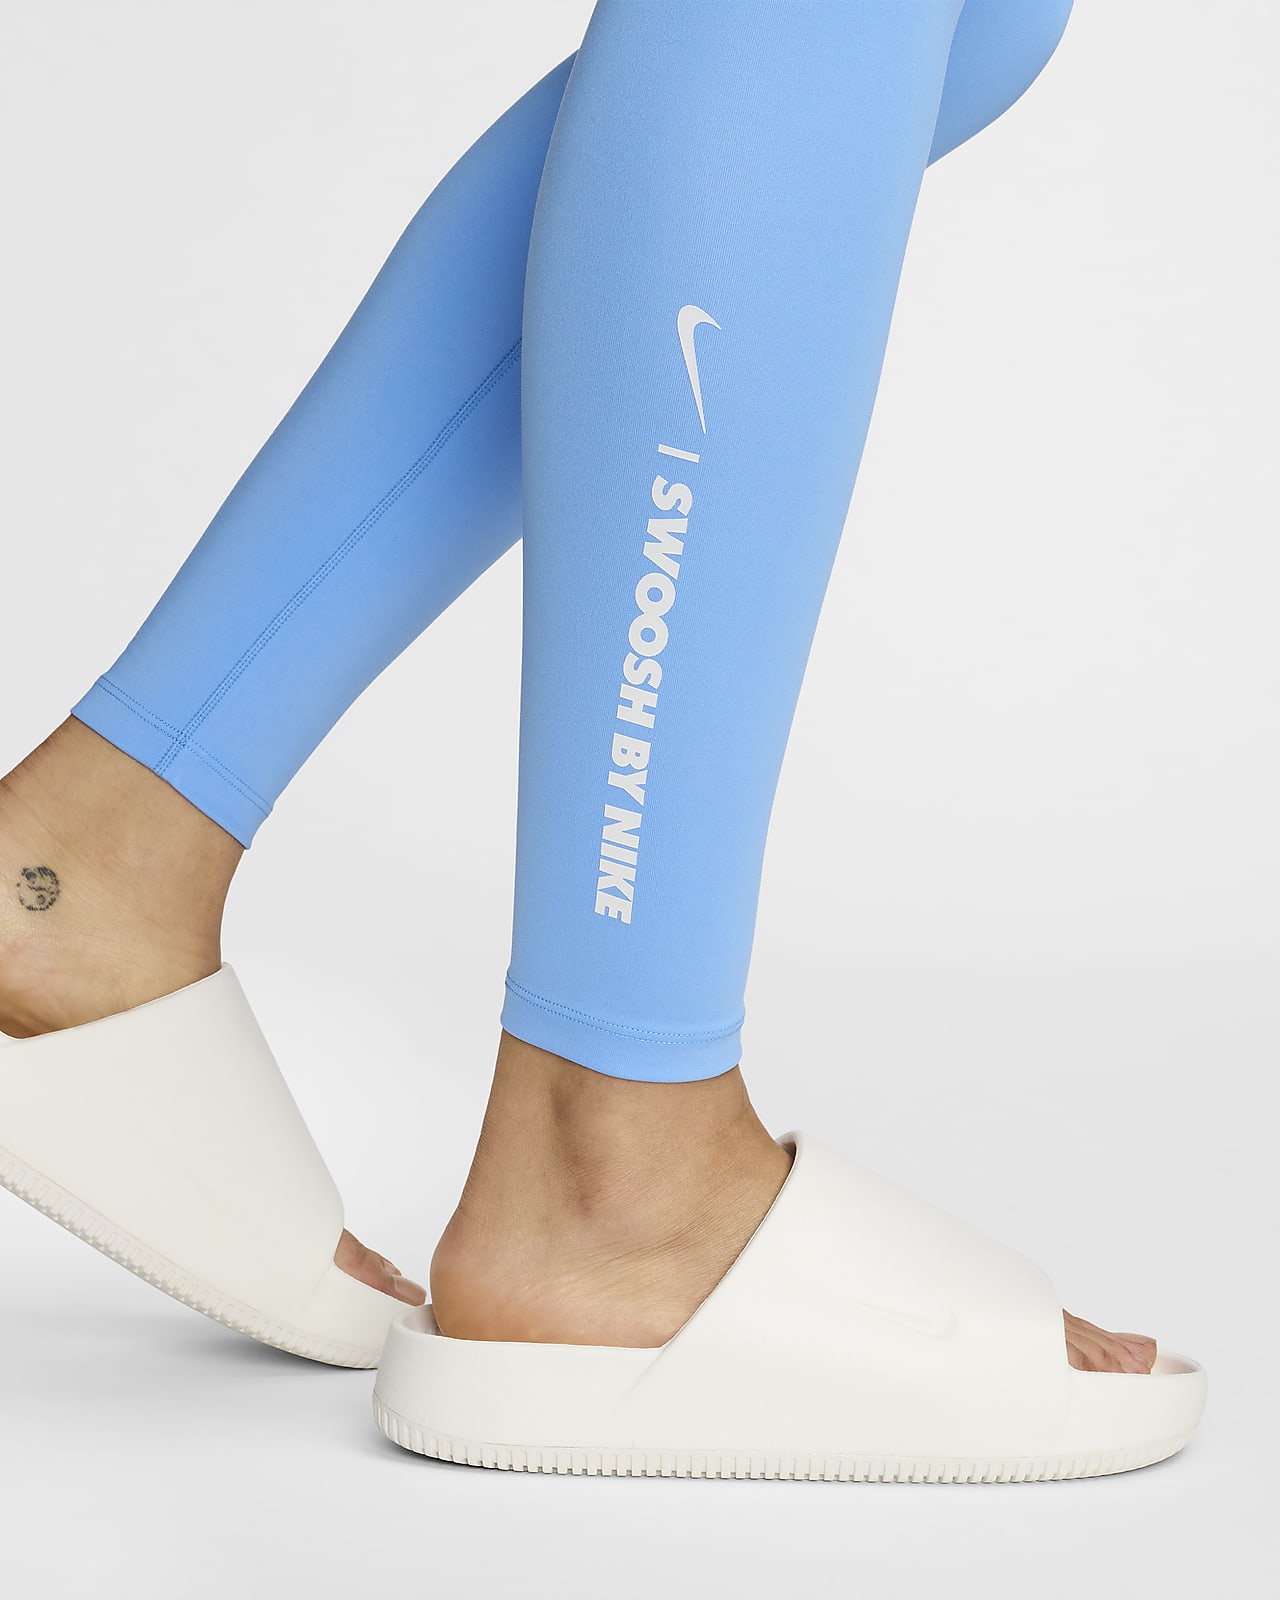 Nike One Women's High-Waisted Full-Length Leggings